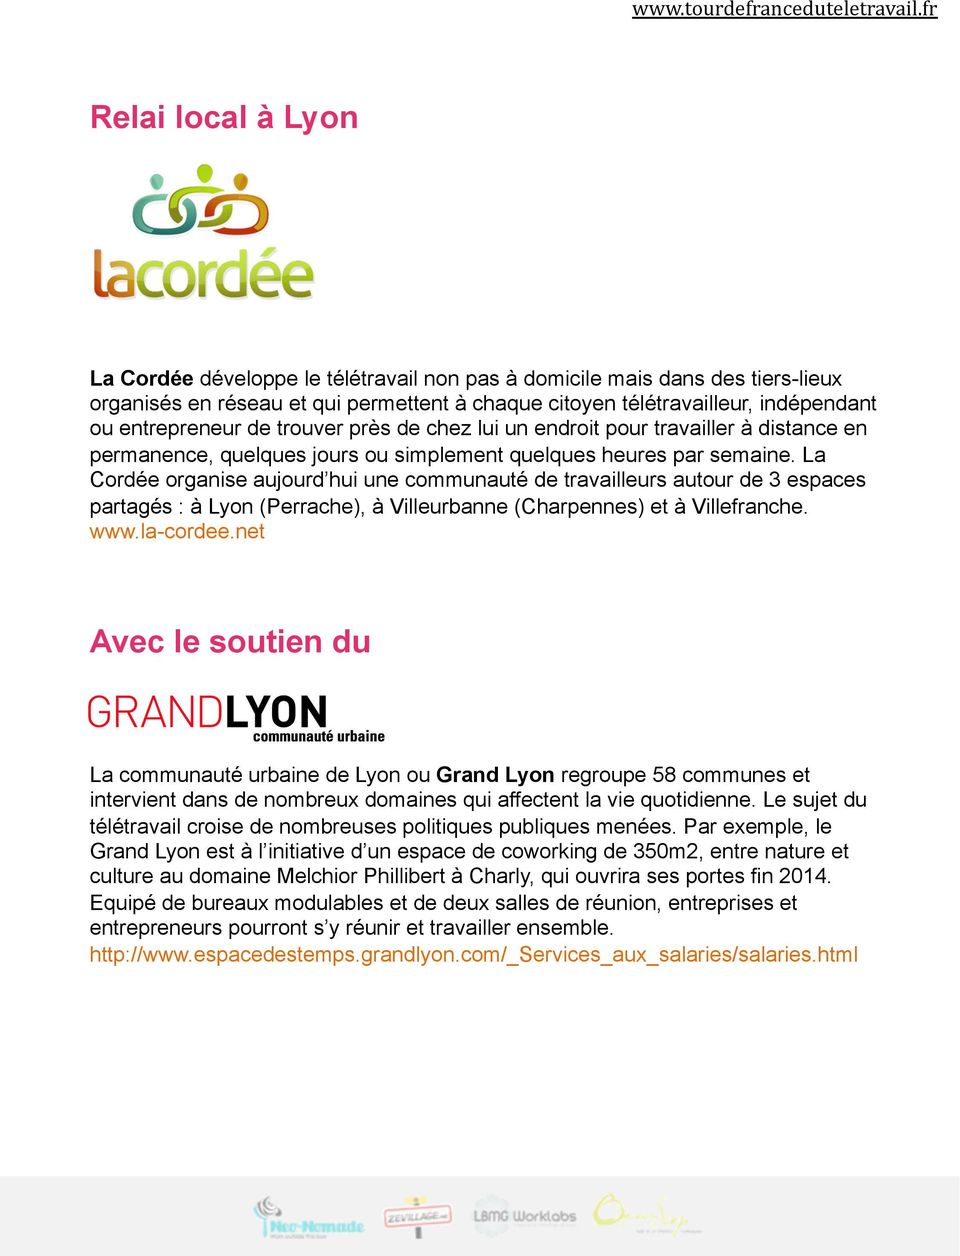 La Cordée organise aujourd hui une communauté de travailleurs autour de 3 espaces partagés : à Lyon (Perrache), à Villeurbanne (Charpennes) et à Villefranche. www.la-cordee.